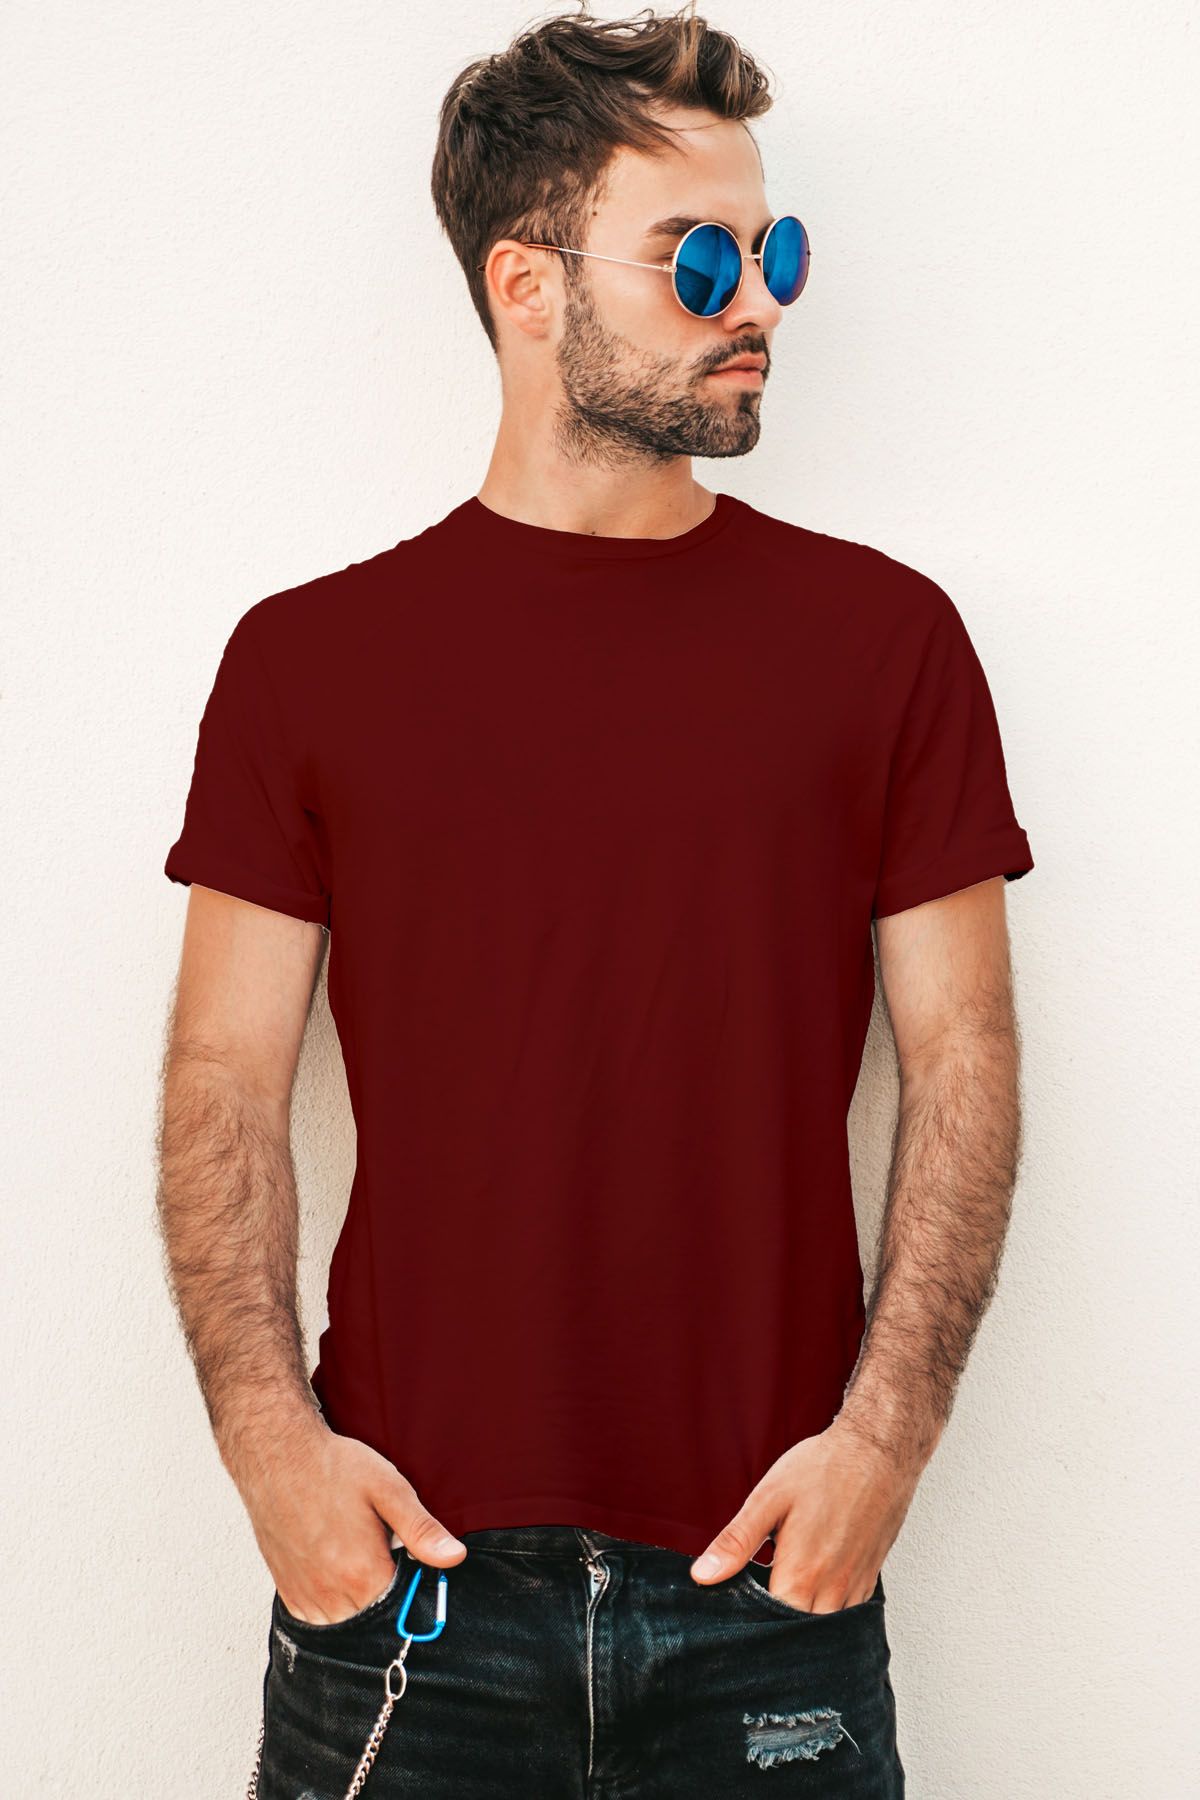 Jerdoni Maroon  Plain T-Shirt - S